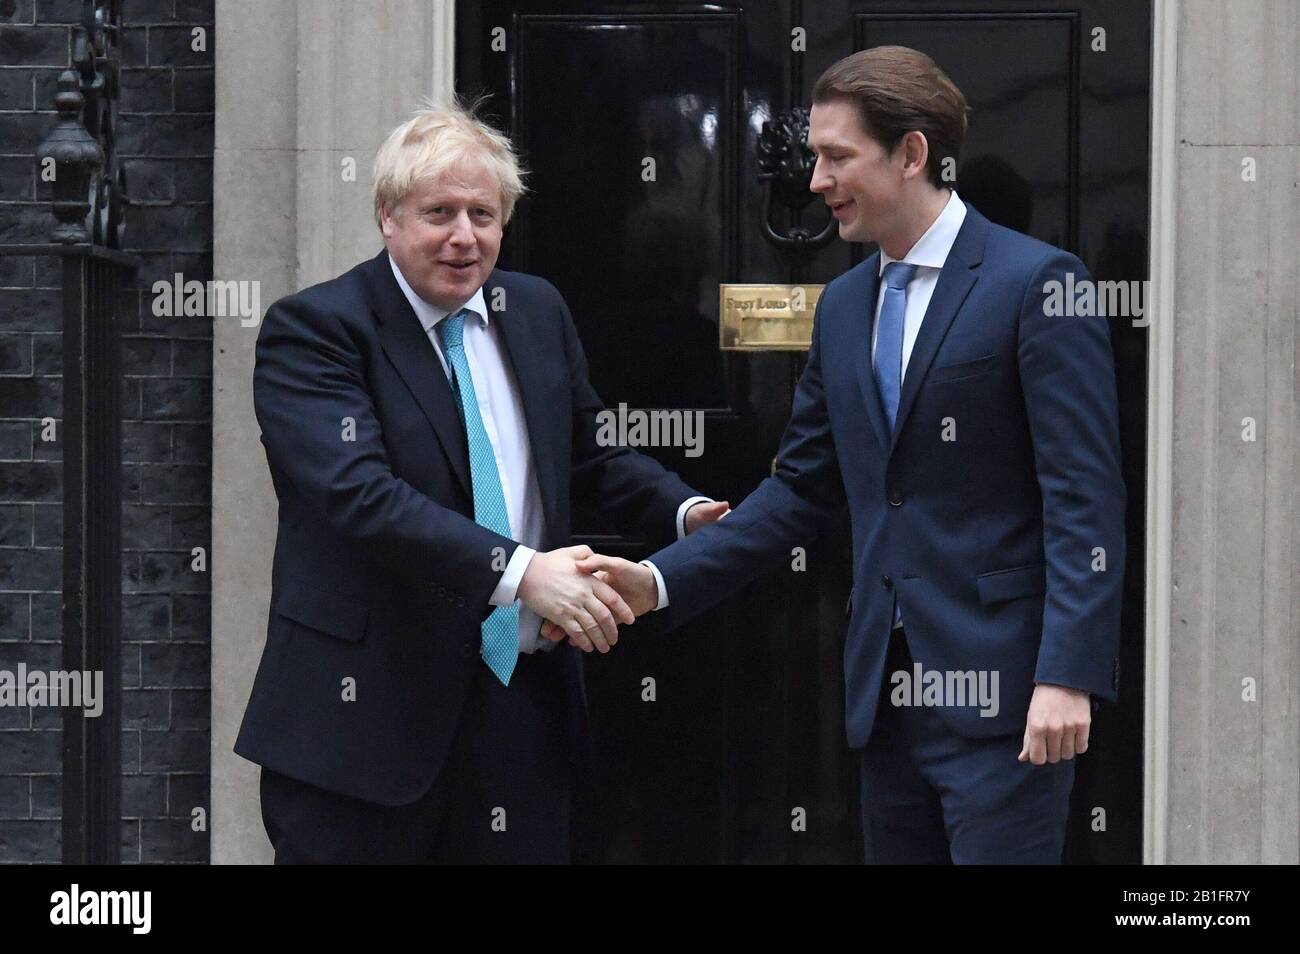 Le Premier ministre Boris Johnson salue le chancelier autrichien Sebastian Kurz sur les pas 10 Downing Street, Londres avant une réunion. Photo PA. Date De L'Image: Mardi 25 Février 2020. Crédit photo devrait lire: Kirsty O'Connor/PA Wire Banque D'Images